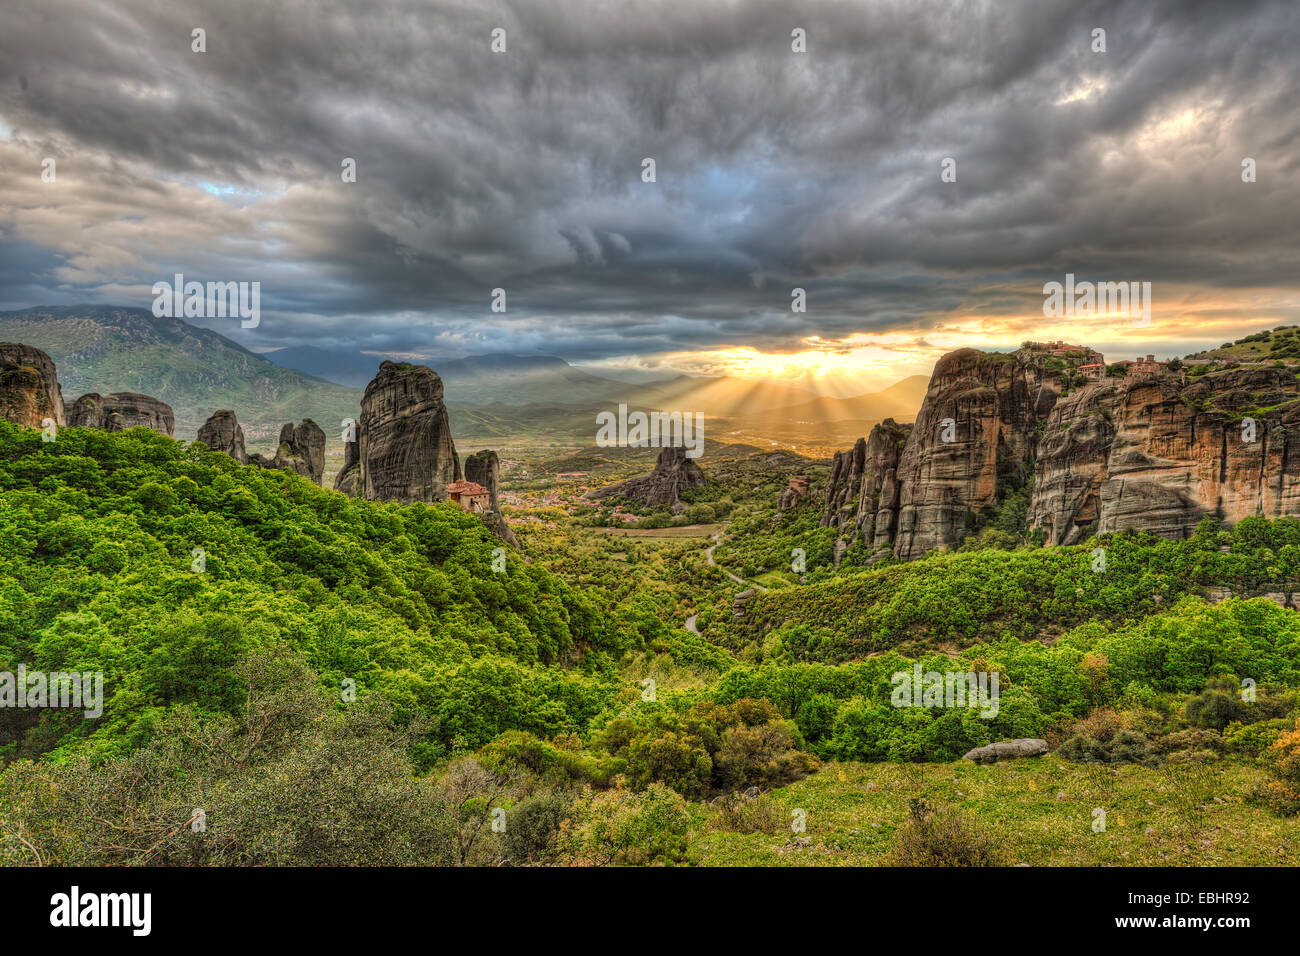 Los monasterios en la parte superior de gigantescas rocas parecen milagrosas y hacer de Meteora, uno de los lugares más espectaculares de Grecia. Foto de stock